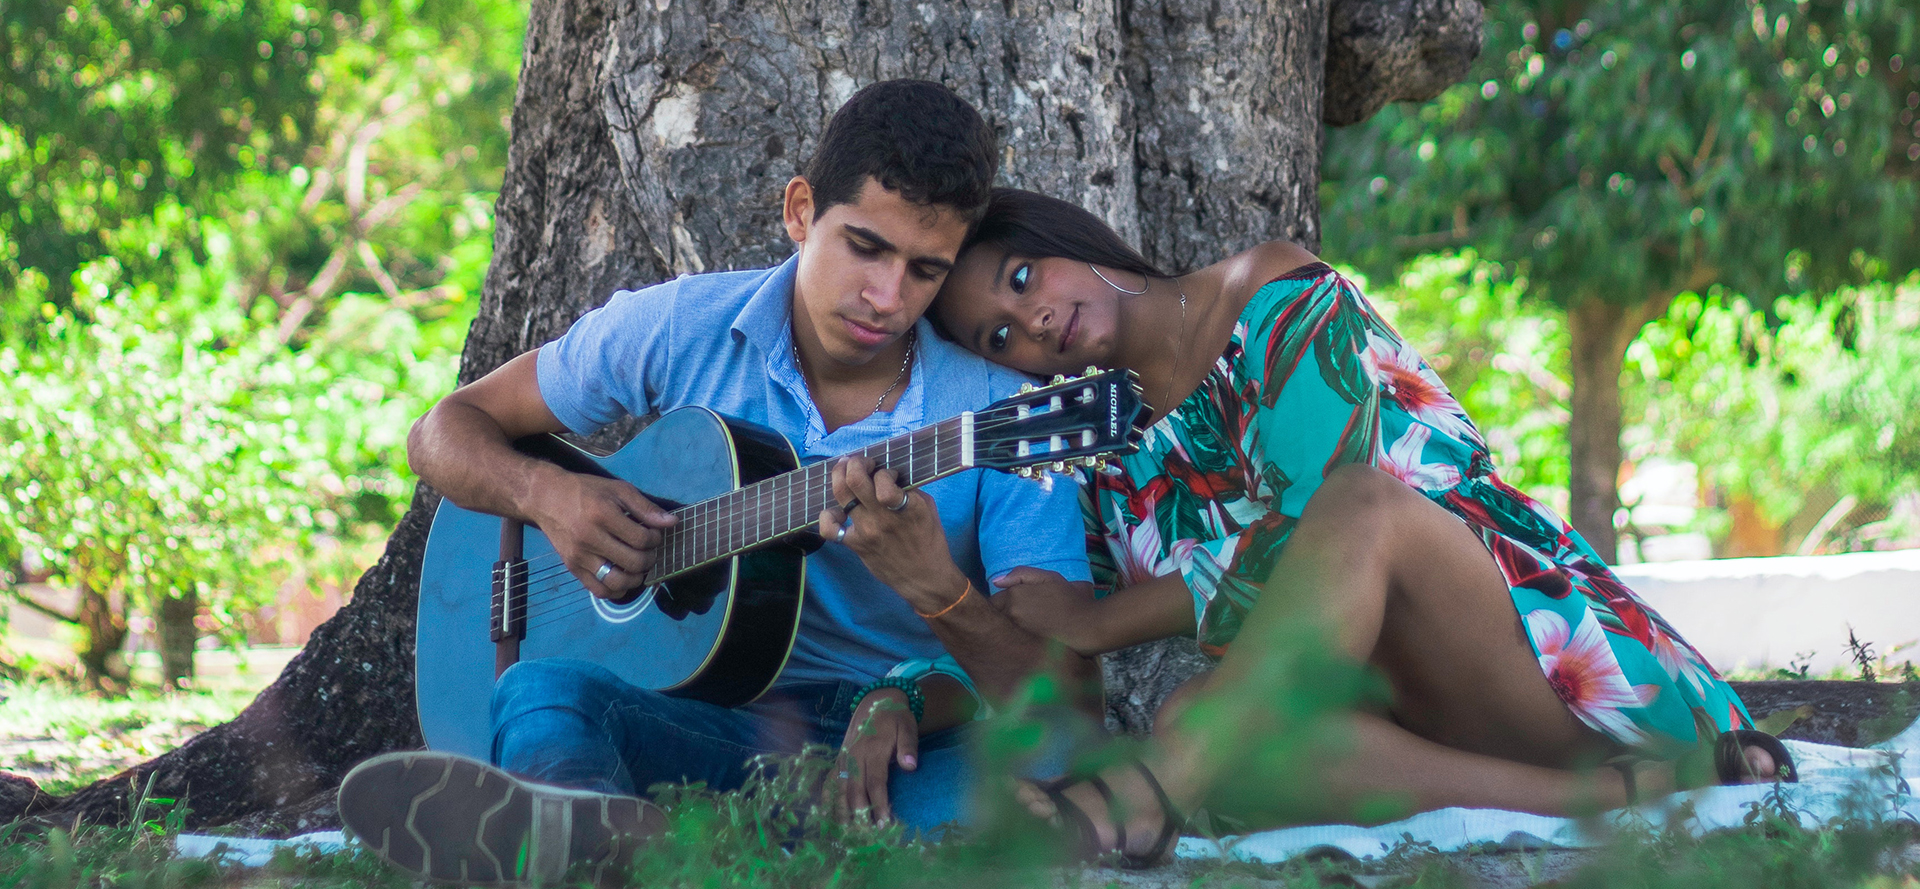 Ein lateinamerikanisches Paar mit einer Gitarre bei einem romantischen Date.